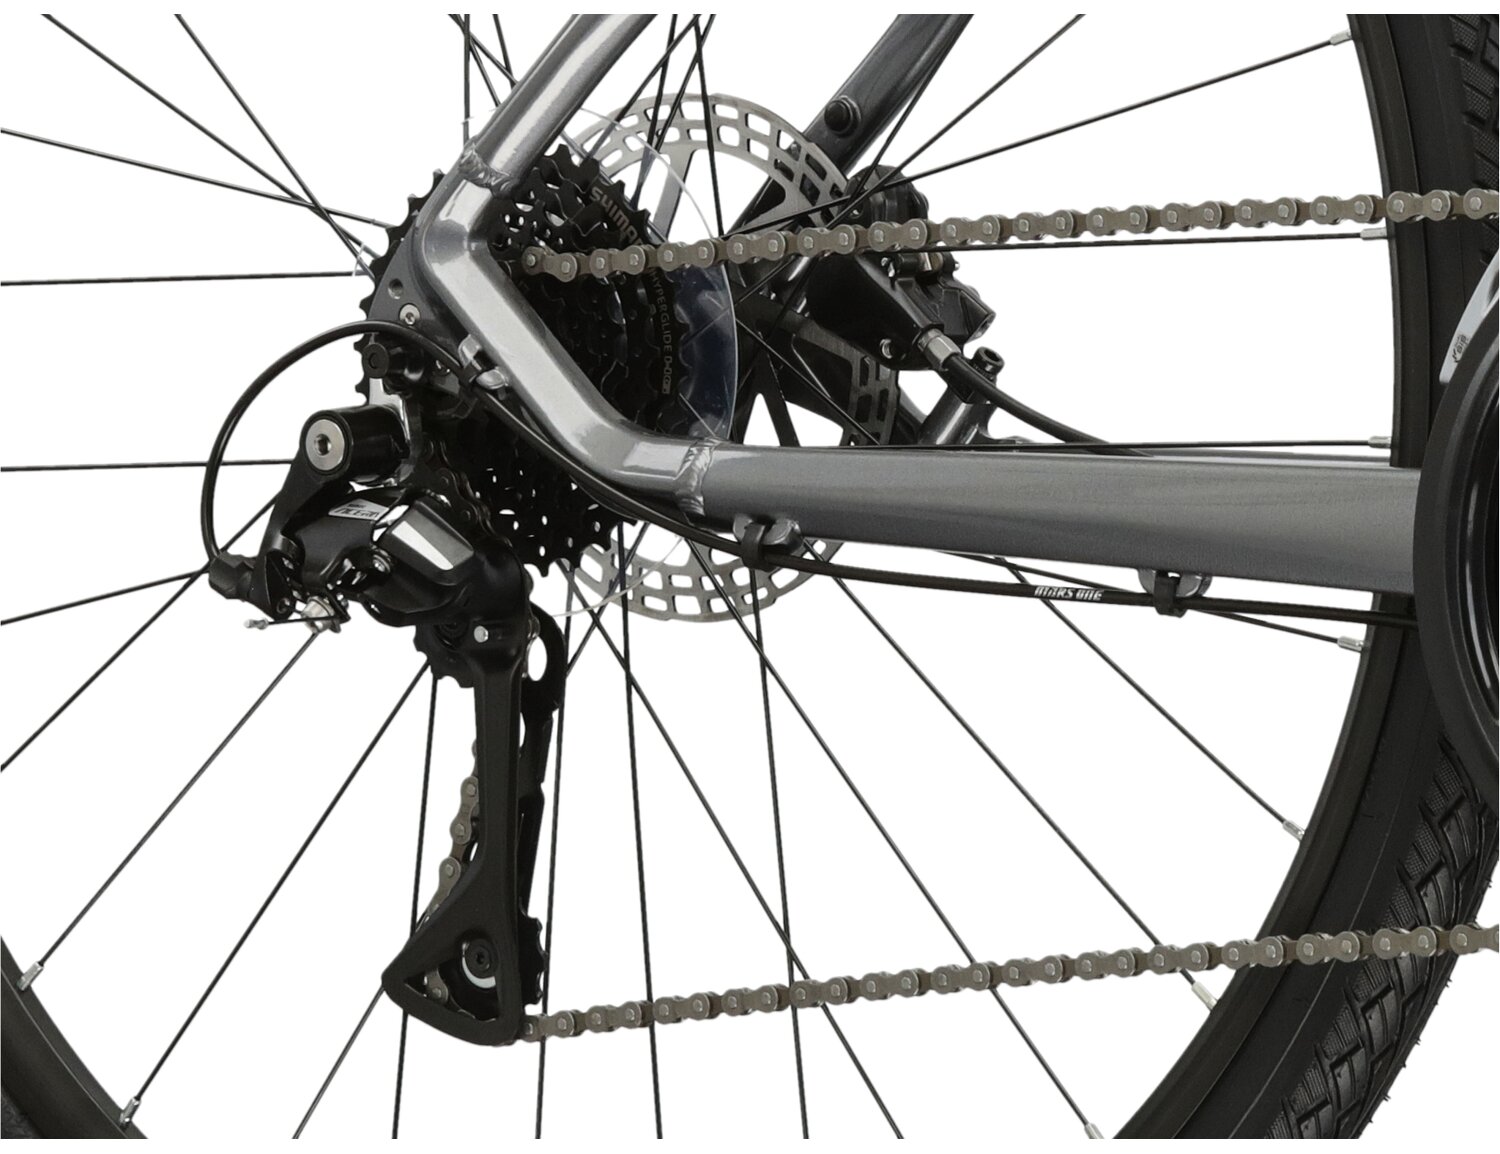  Tylna ośmiobiegowa przerzutka Shimano Acera M3020 oraz hydrauliczne hamulce tarczowe Shimano MT200 w rowerze crossowym KROSS Evado 4.0 